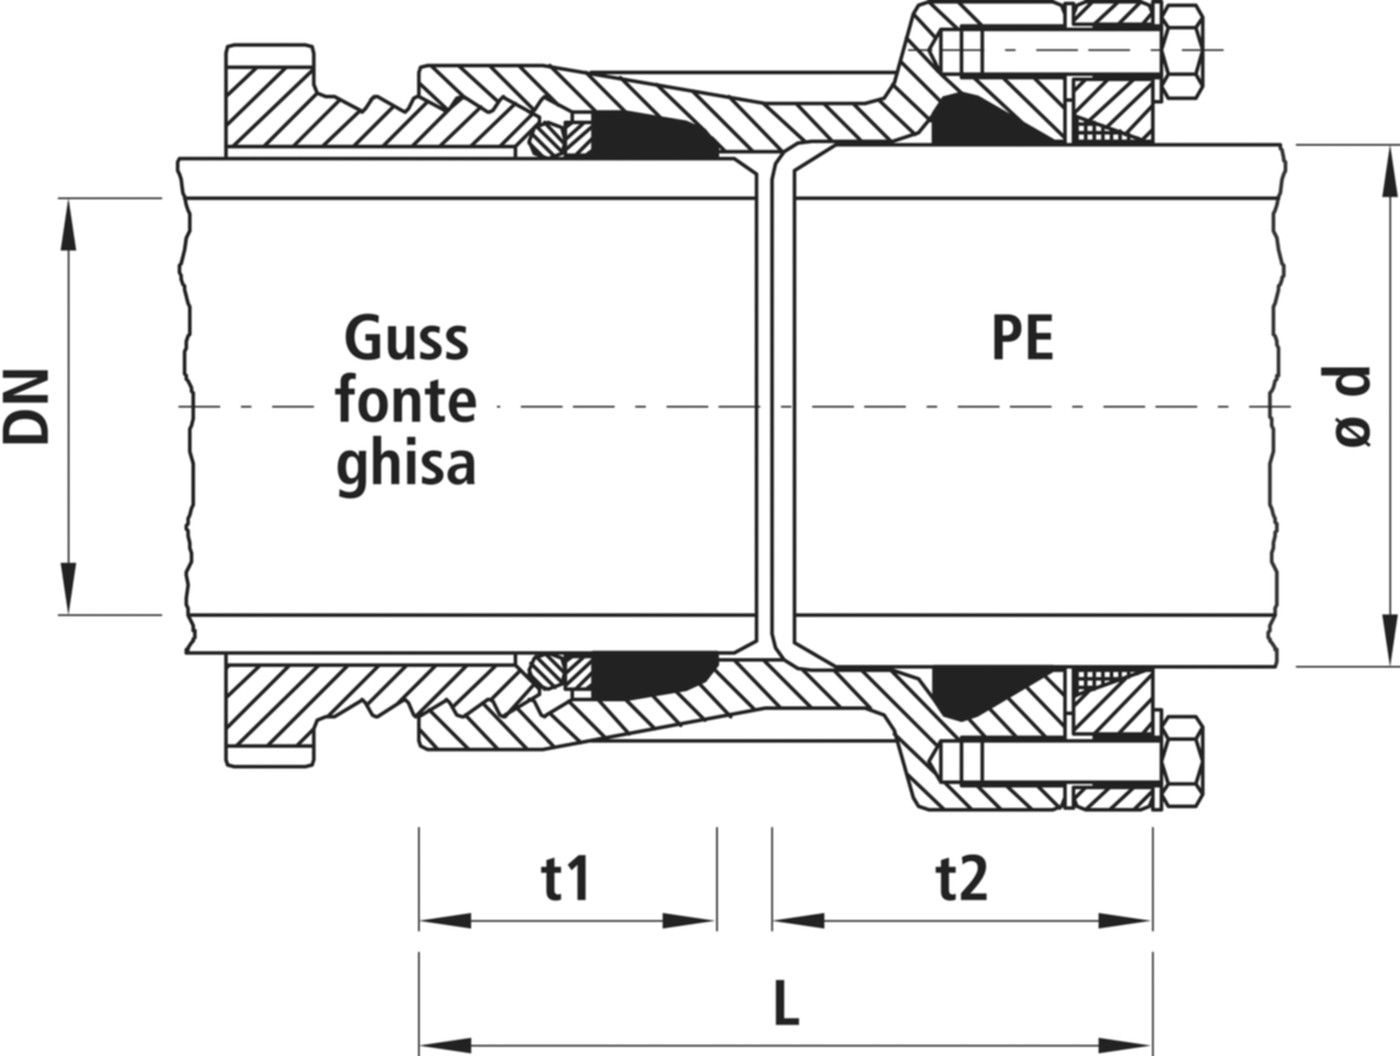 Verbinder Guss/PE, für Wasser 7230 DN 150 / d 200mm - Hawle System 2000